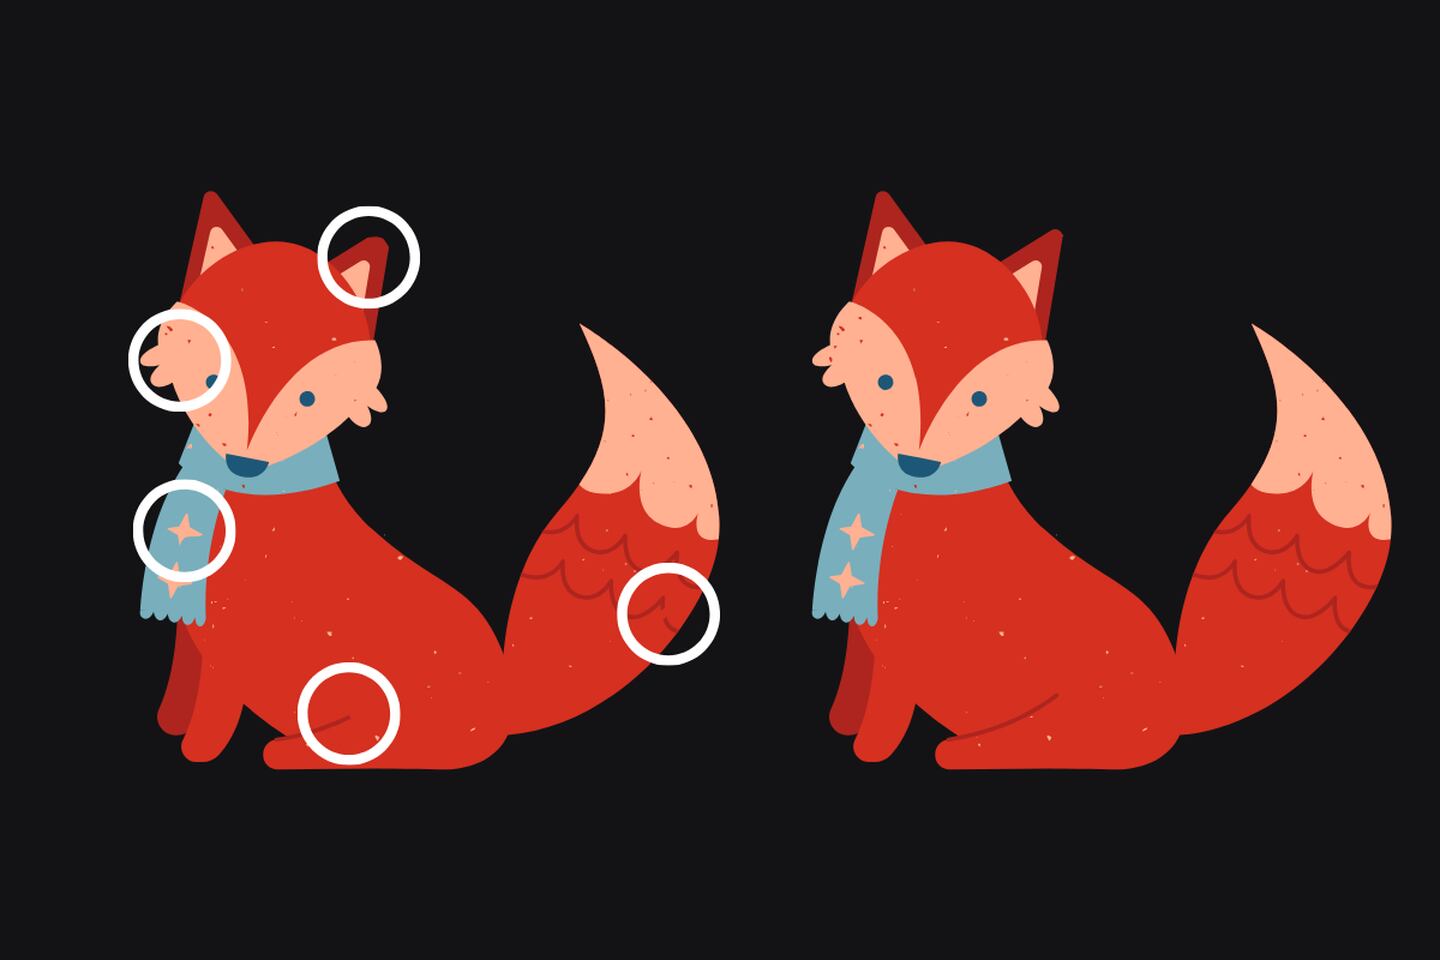 En este test visual hay dos zorros que parecen iguales, pero tienen cinco diferencias entre ellas.